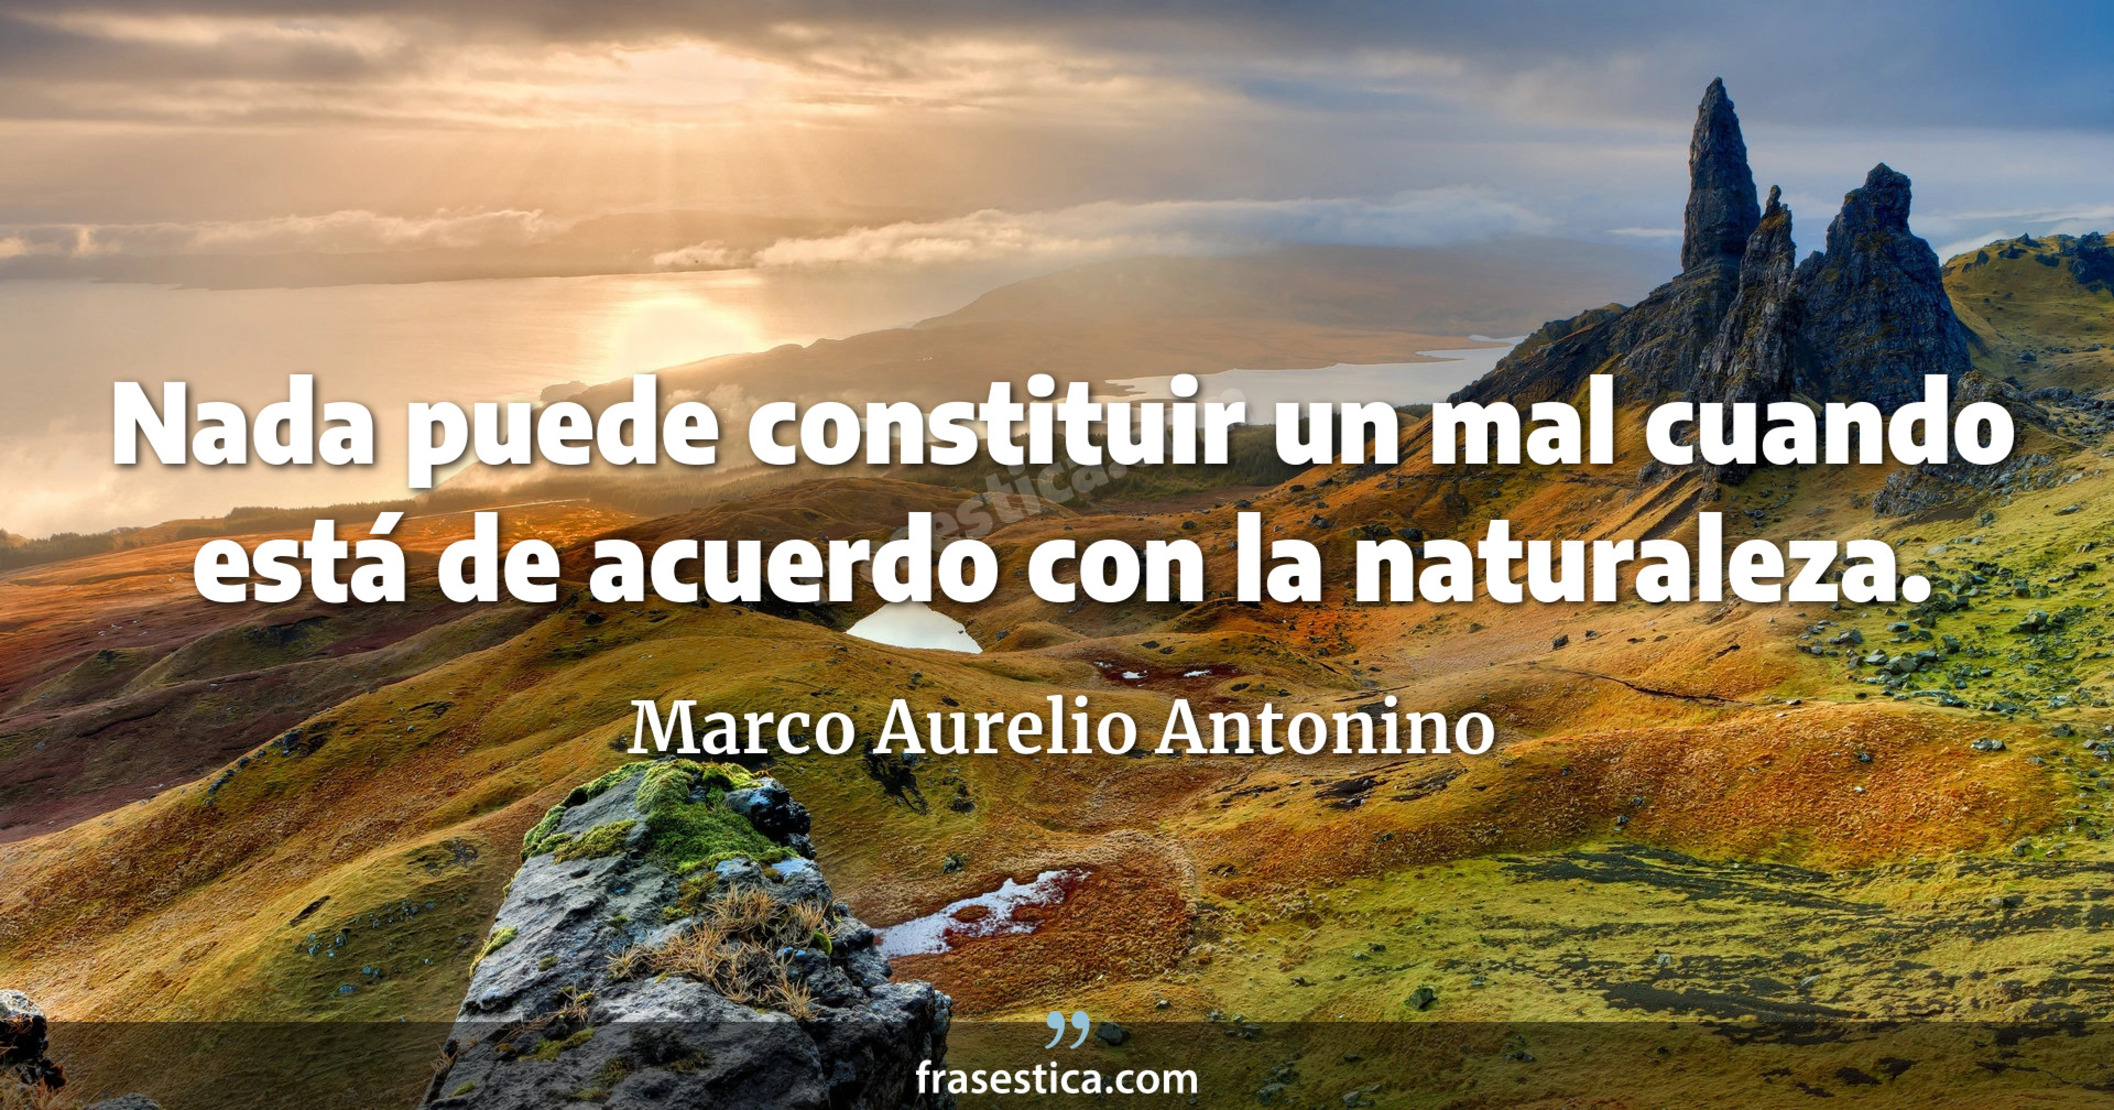 Nada puede constituir un mal cuando está de acuerdo con la naturaleza. - Marco Aurelio Antonino